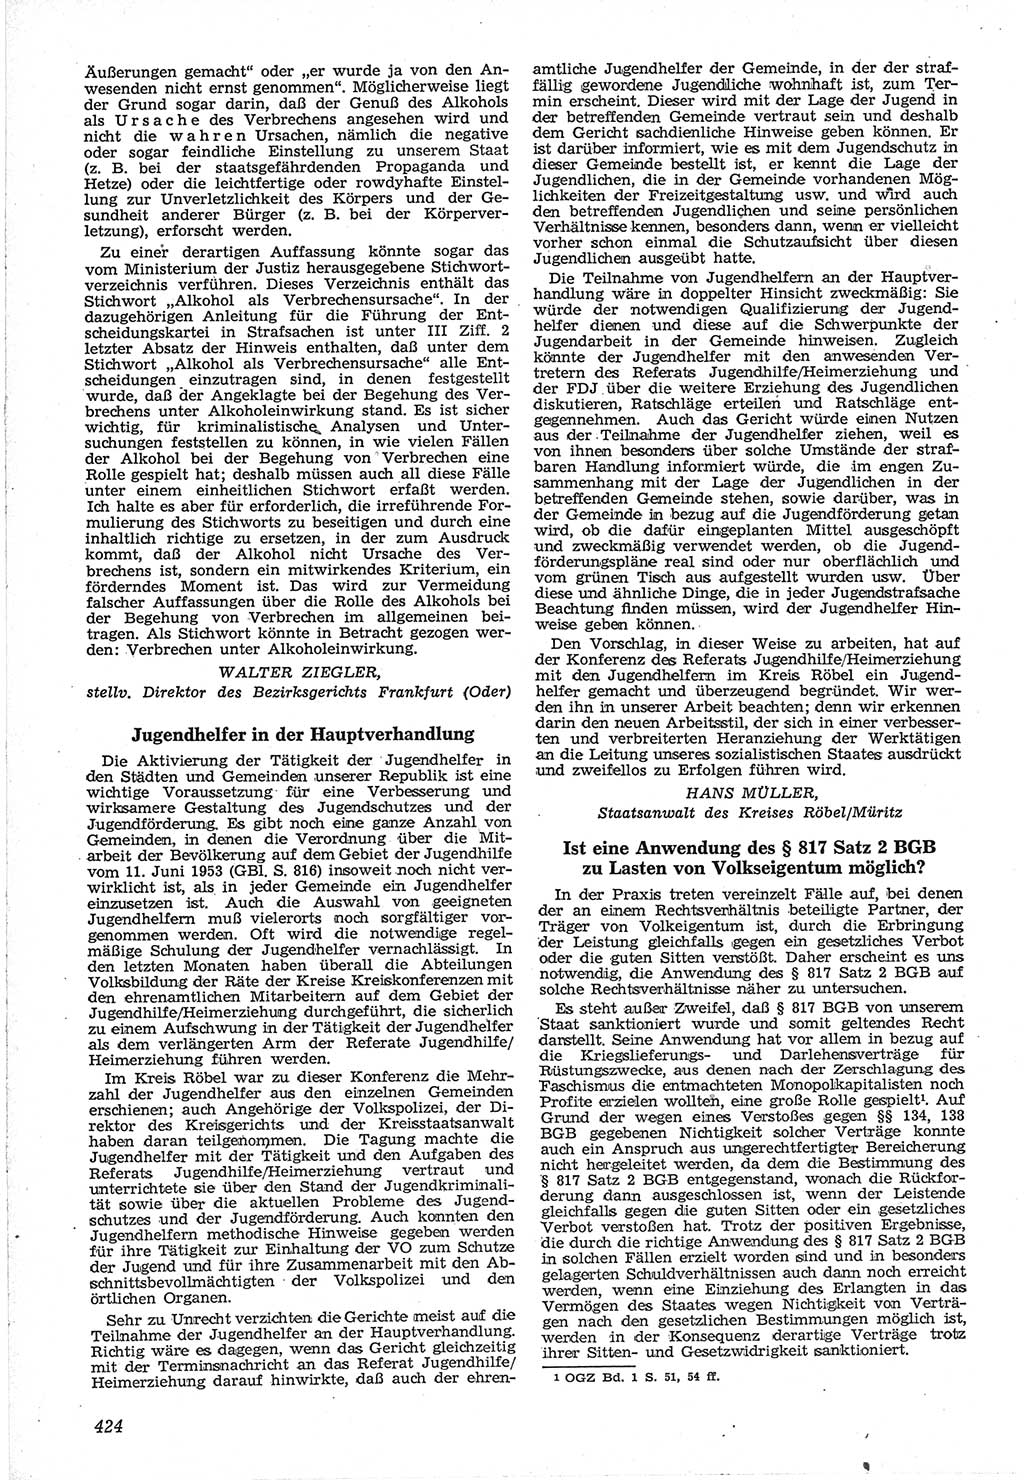 Neue Justiz (NJ), Zeitschrift für Recht und Rechtswissenschaft [Deutsche Demokratische Republik (DDR)], 12. Jahrgang 1958, Seite 424 (NJ DDR 1958, S. 424)